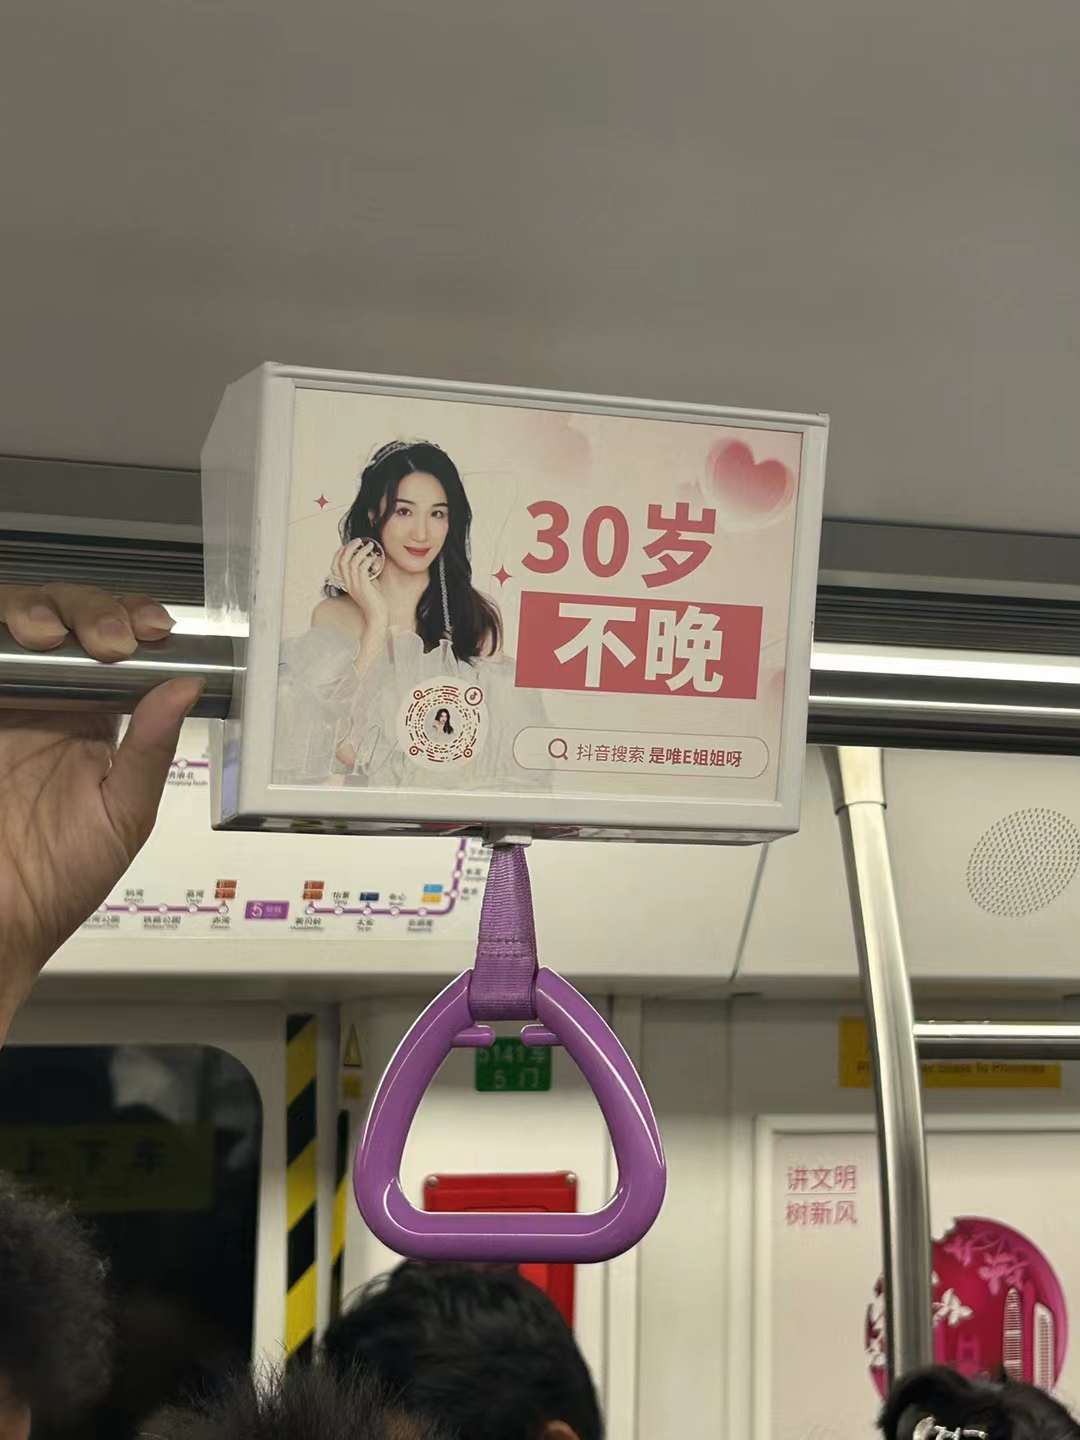 深圳地铁广告价格对宣传效果的影响